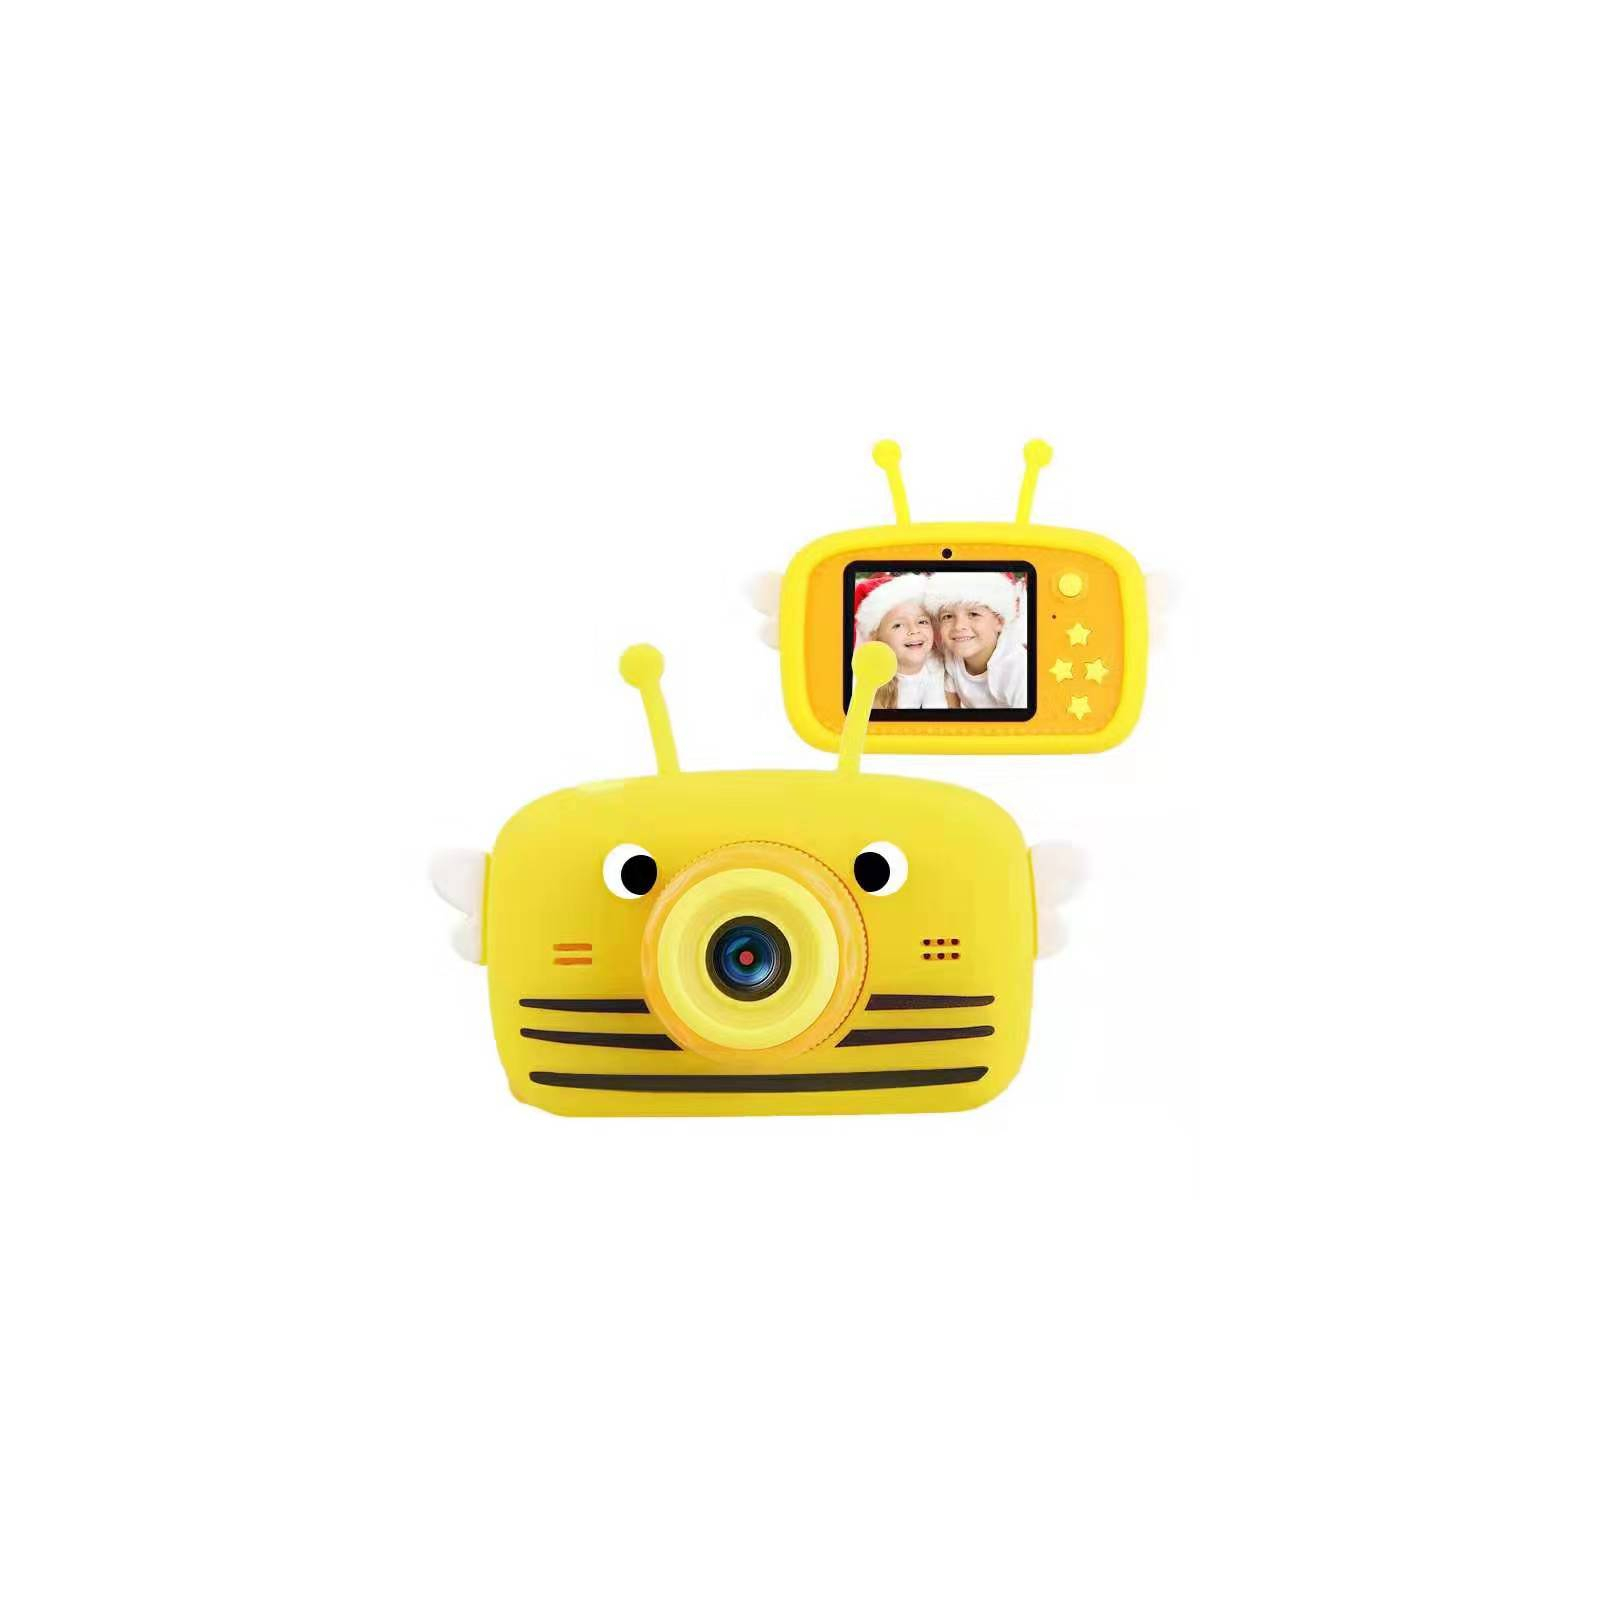 Інтерактивна іграшка XoKo Bee Dual Lens дитячий фотоапарат помаранч. (KVR-100-OR)